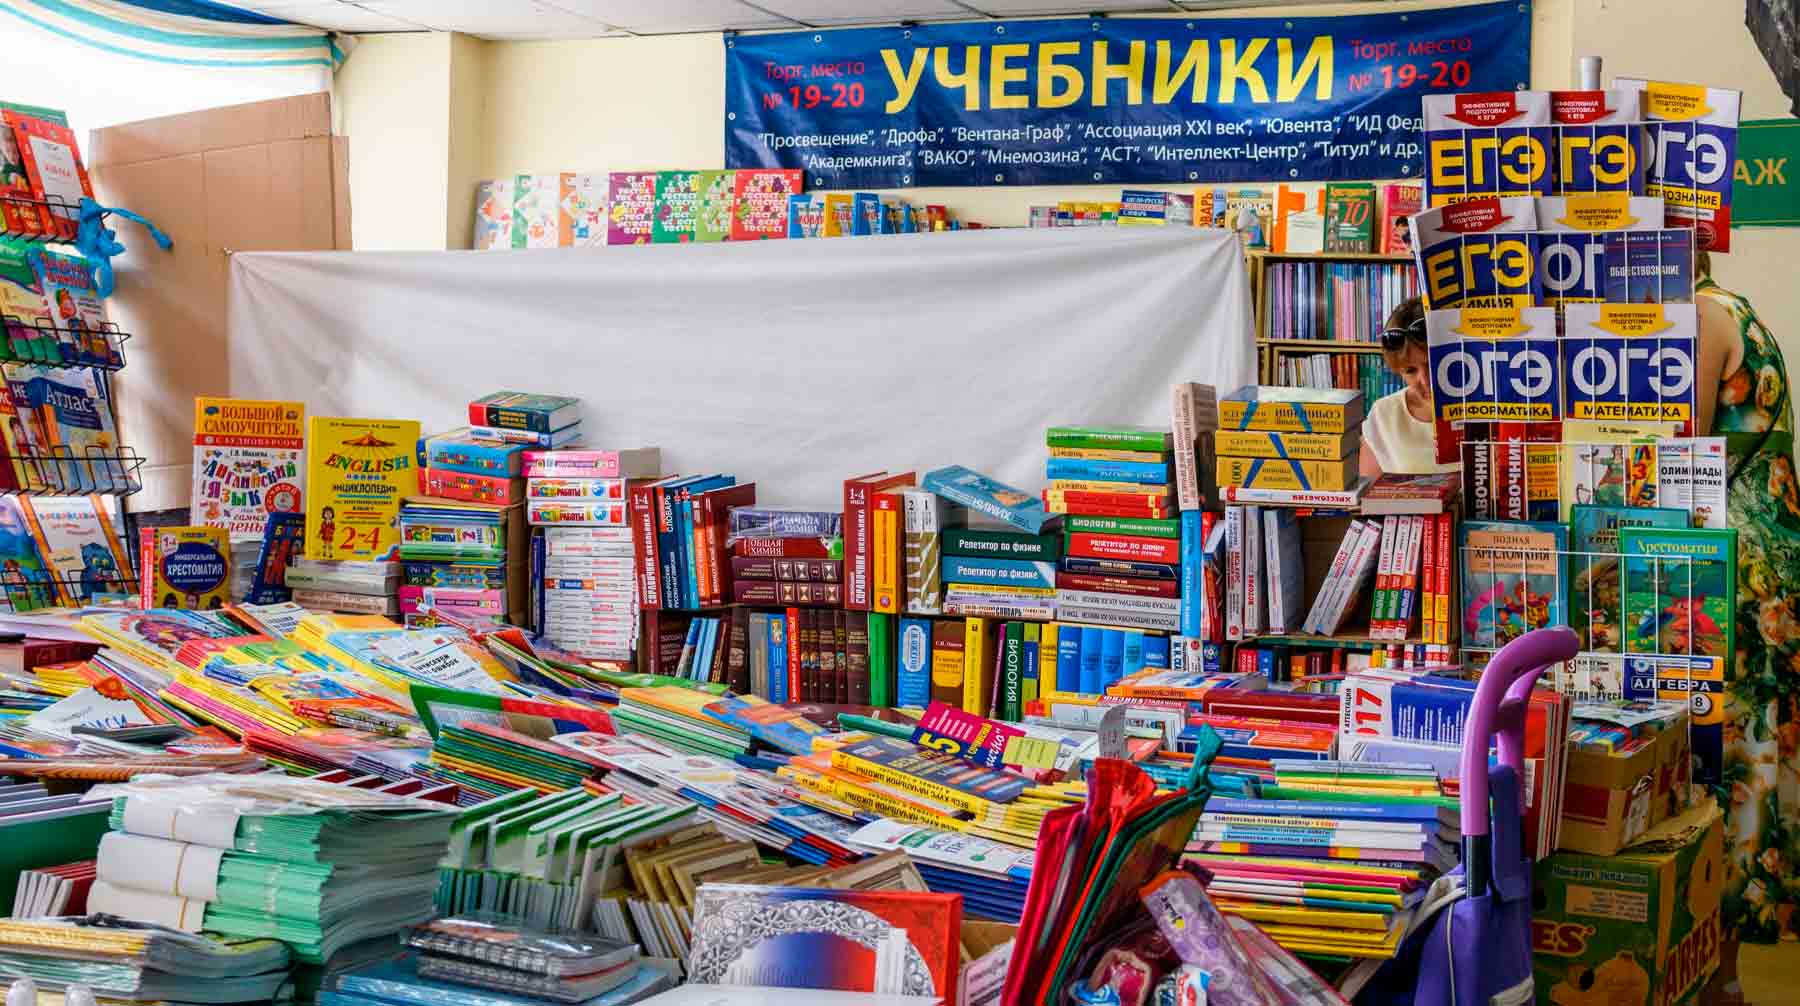 Дистанционное обучение для московских учащихся столичные власти продлили до 31 мая Фото: © Global Look Press / Sergey Smirnov